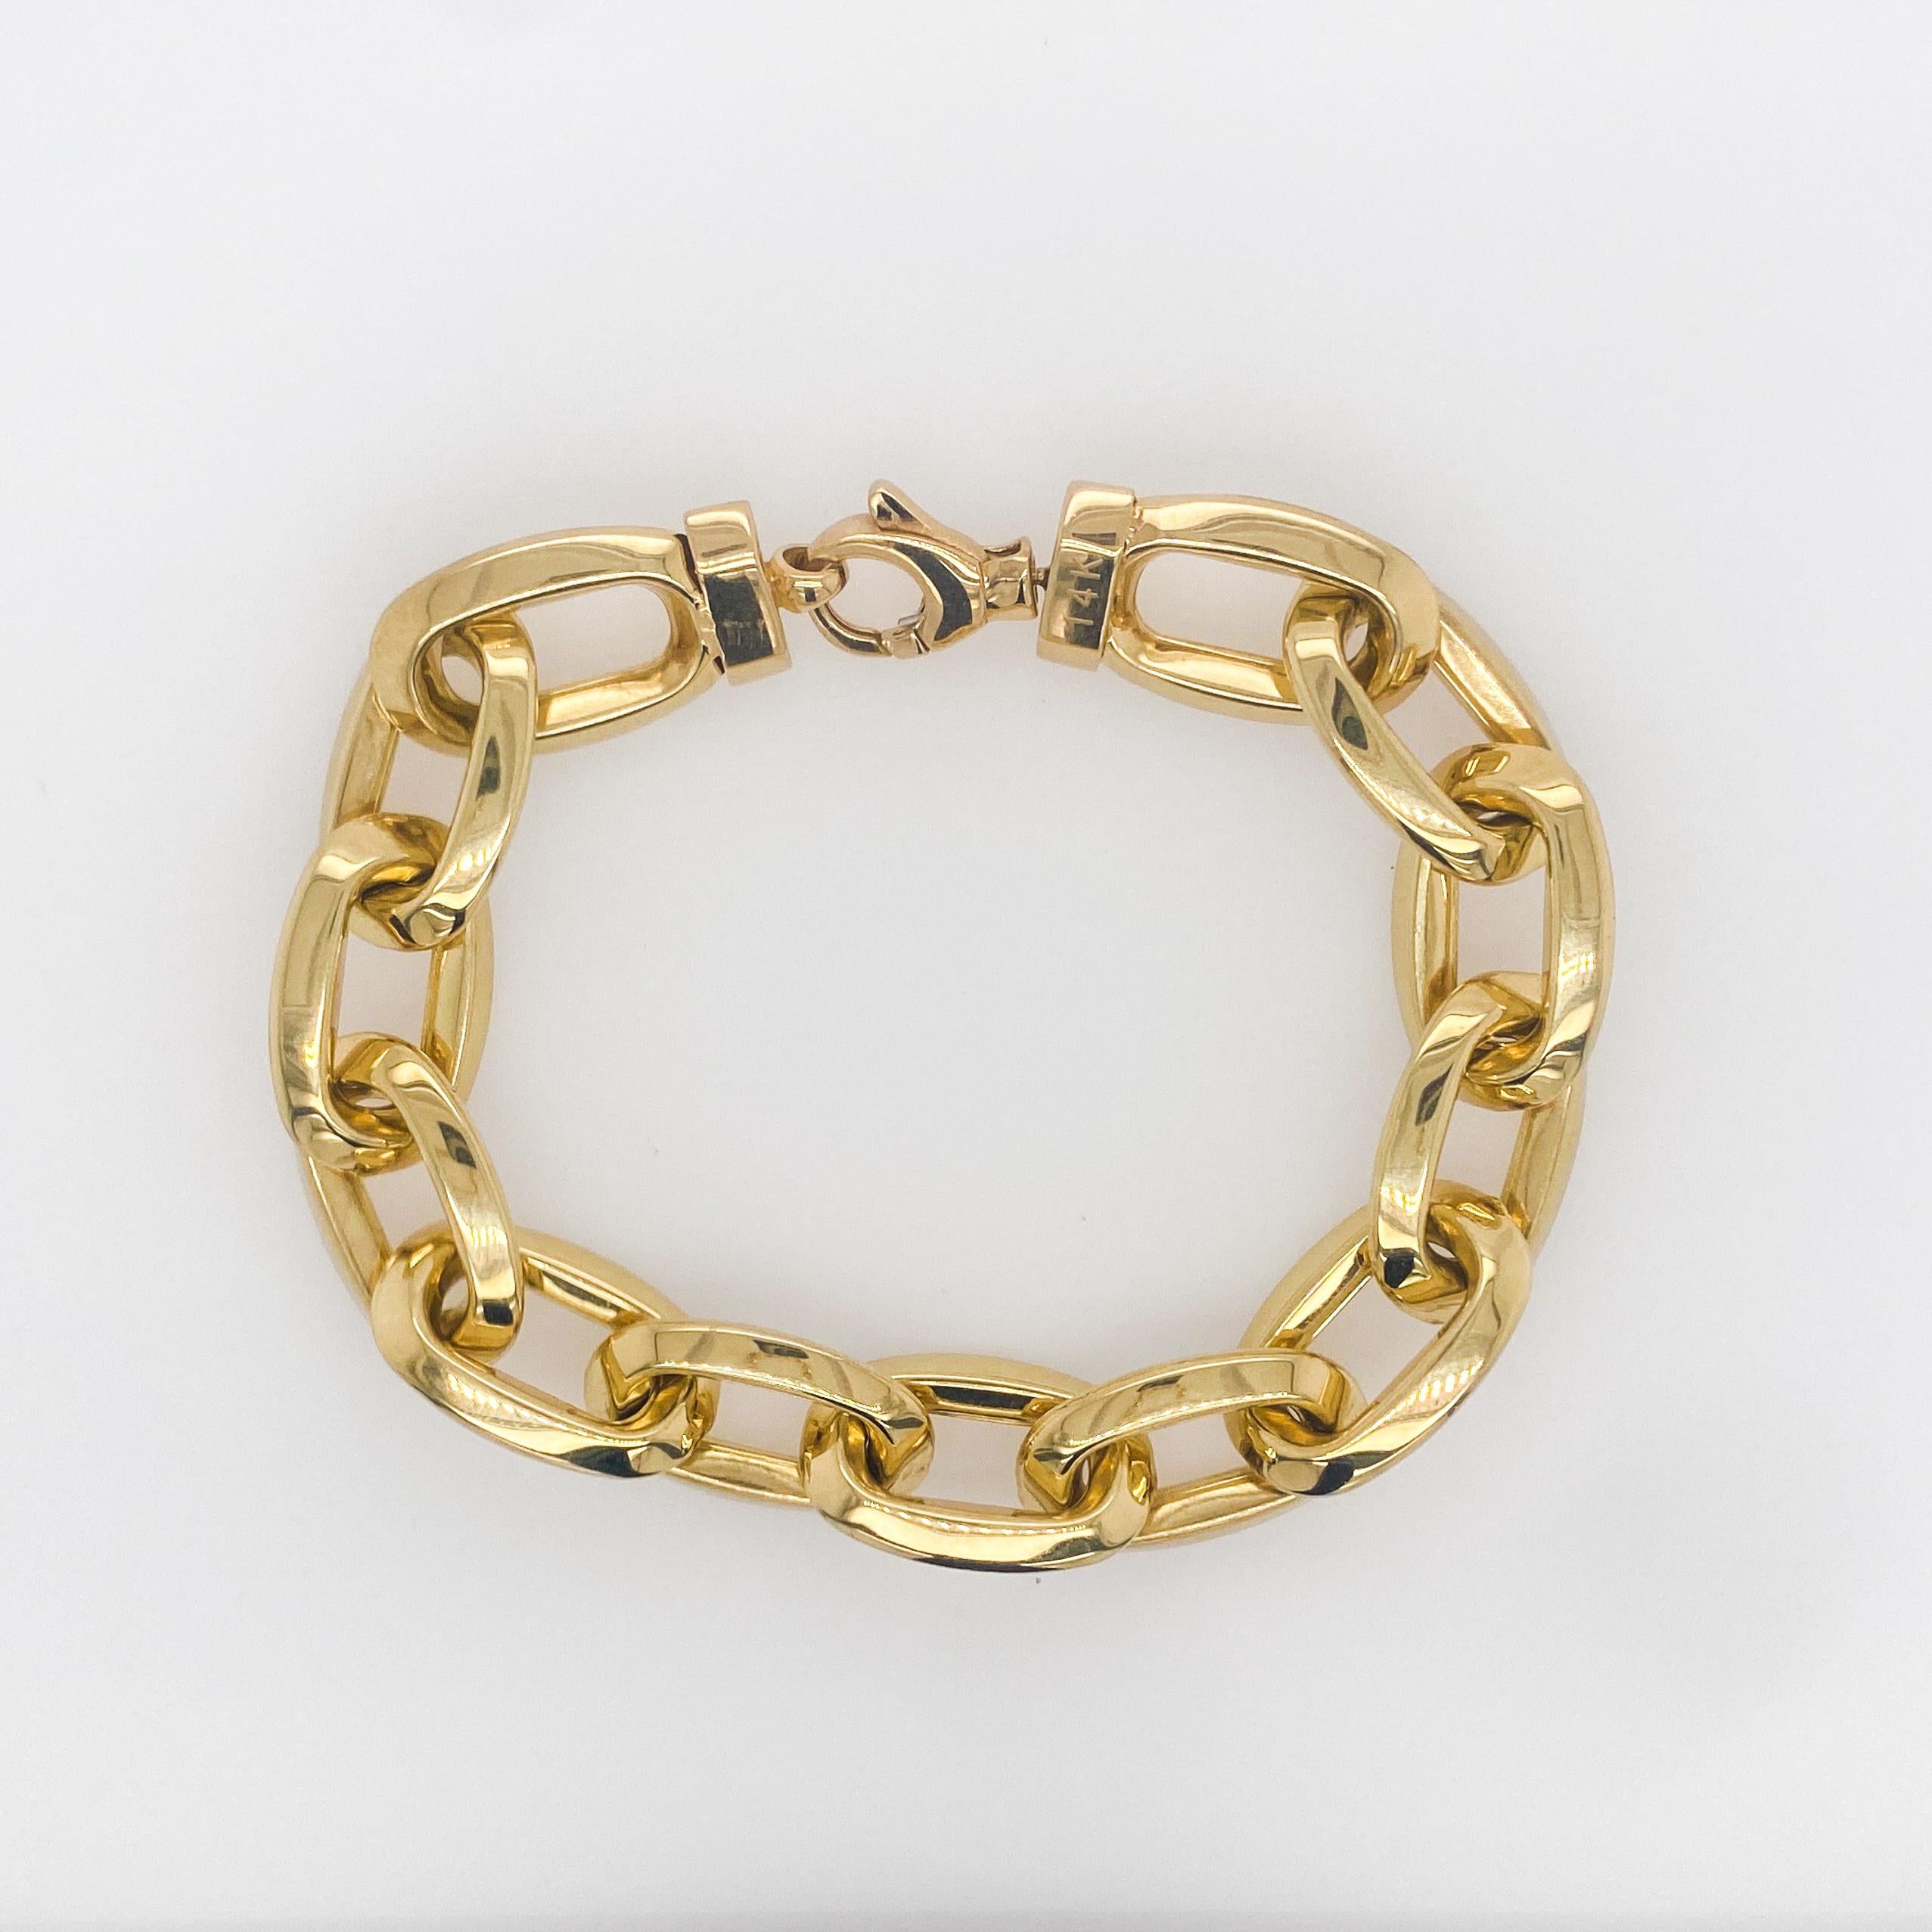 La dernière tendance en matière de bijouterie fine ! Ce bracelet en or jaune 14K est assorti à tout et constitue le complément parfait de toute tenue, décontractée ou formelle. Il s'agit du dernier modèle que nous avons créé - audacieux et joli sur